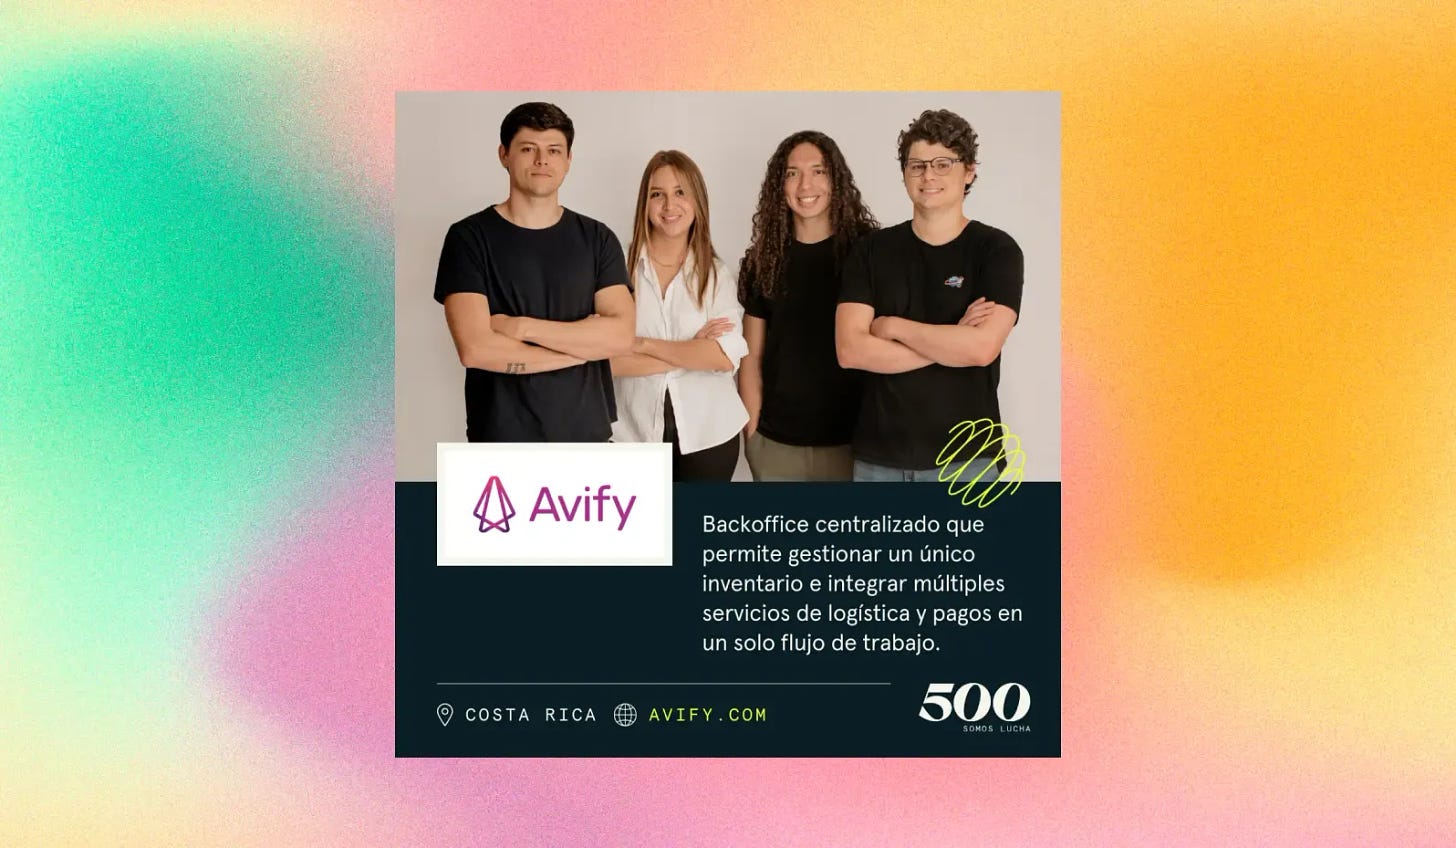 Así es como Avify busca posicionarse como la empresa líder en automatización de e-commerce